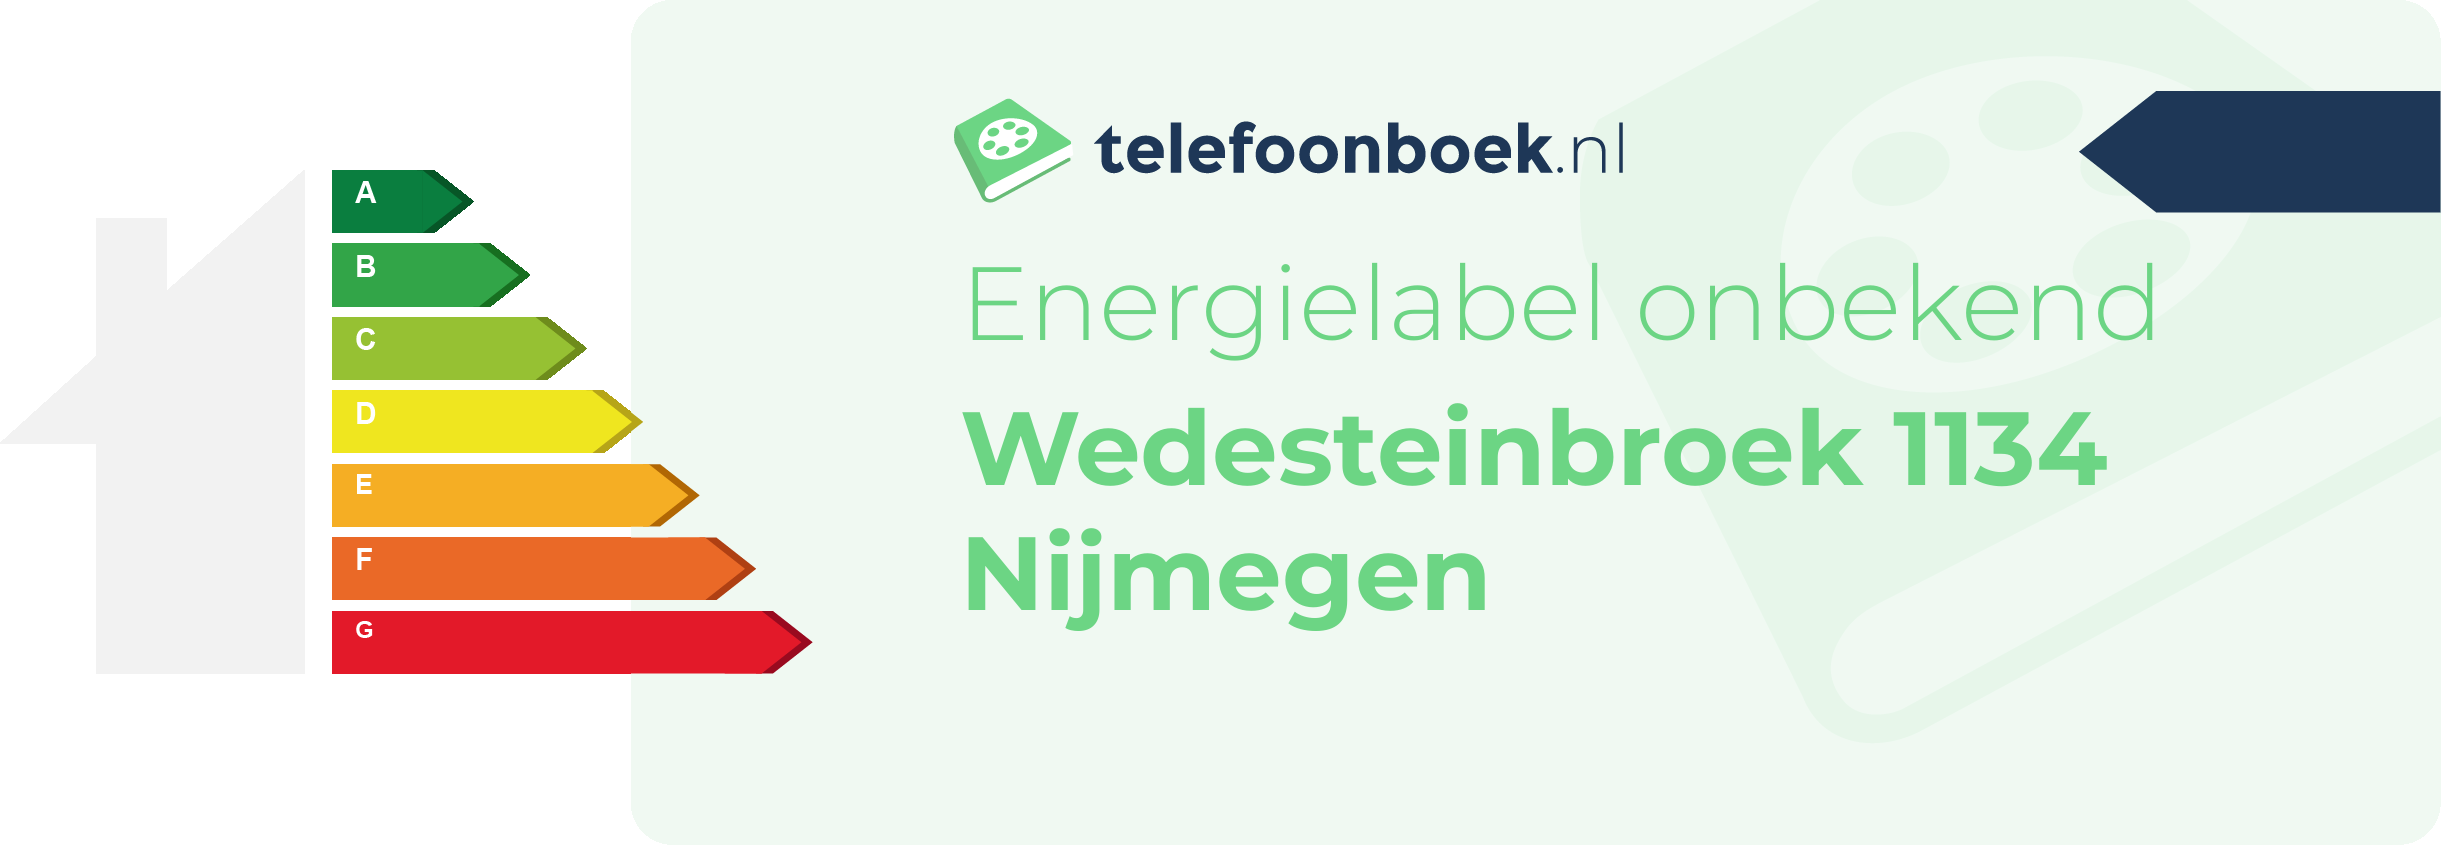 Energielabel Wedesteinbroek 1134 Nijmegen